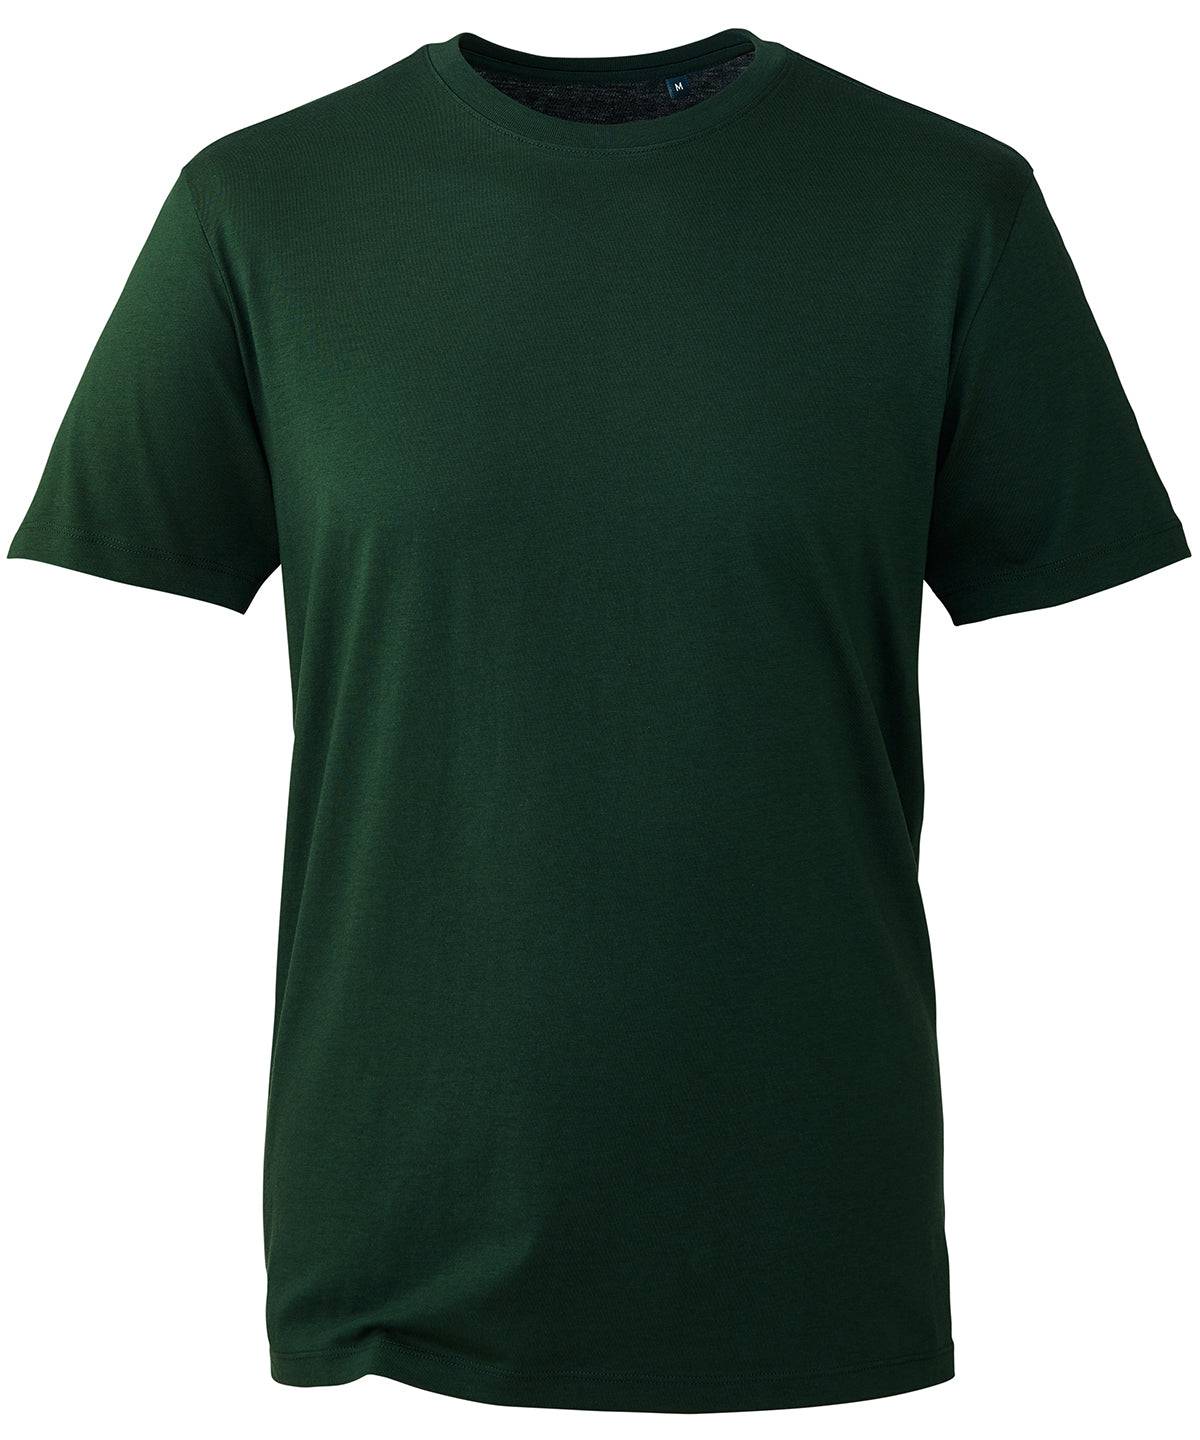 Forest Green - Anthem t-shirt